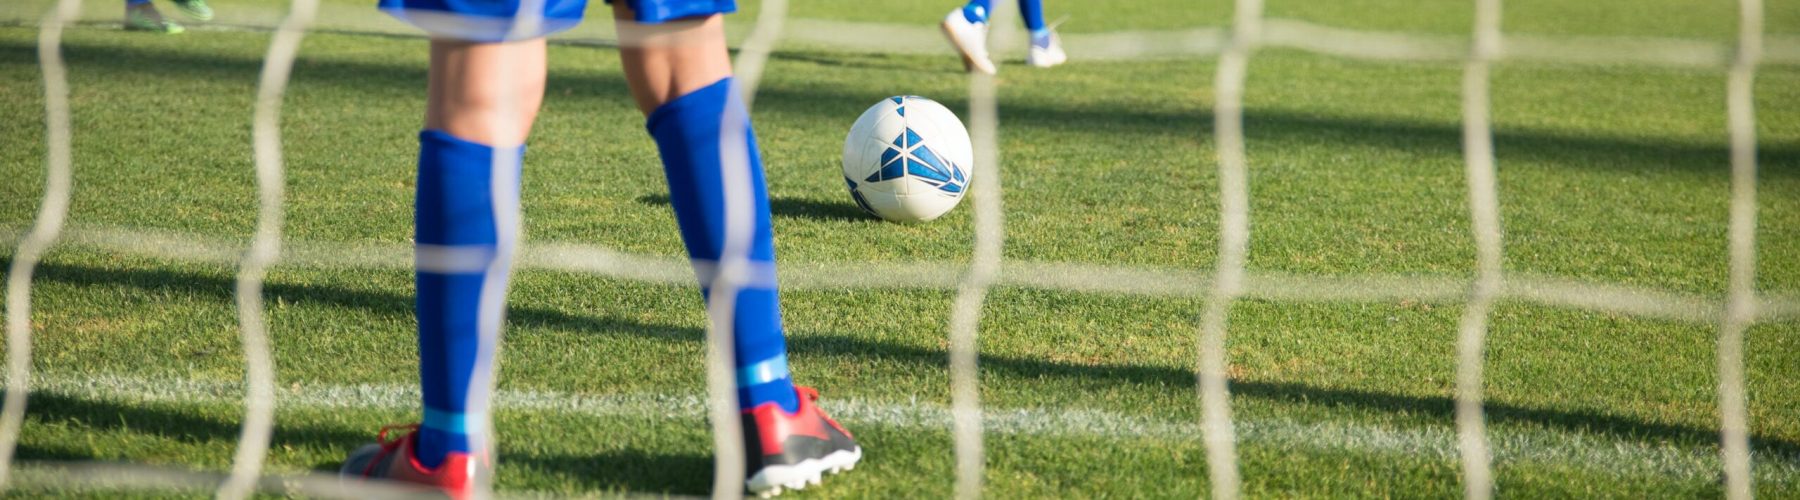 Durabilidade e Resistência: A Rede Futebol de Campo que Aguenta o Jogo